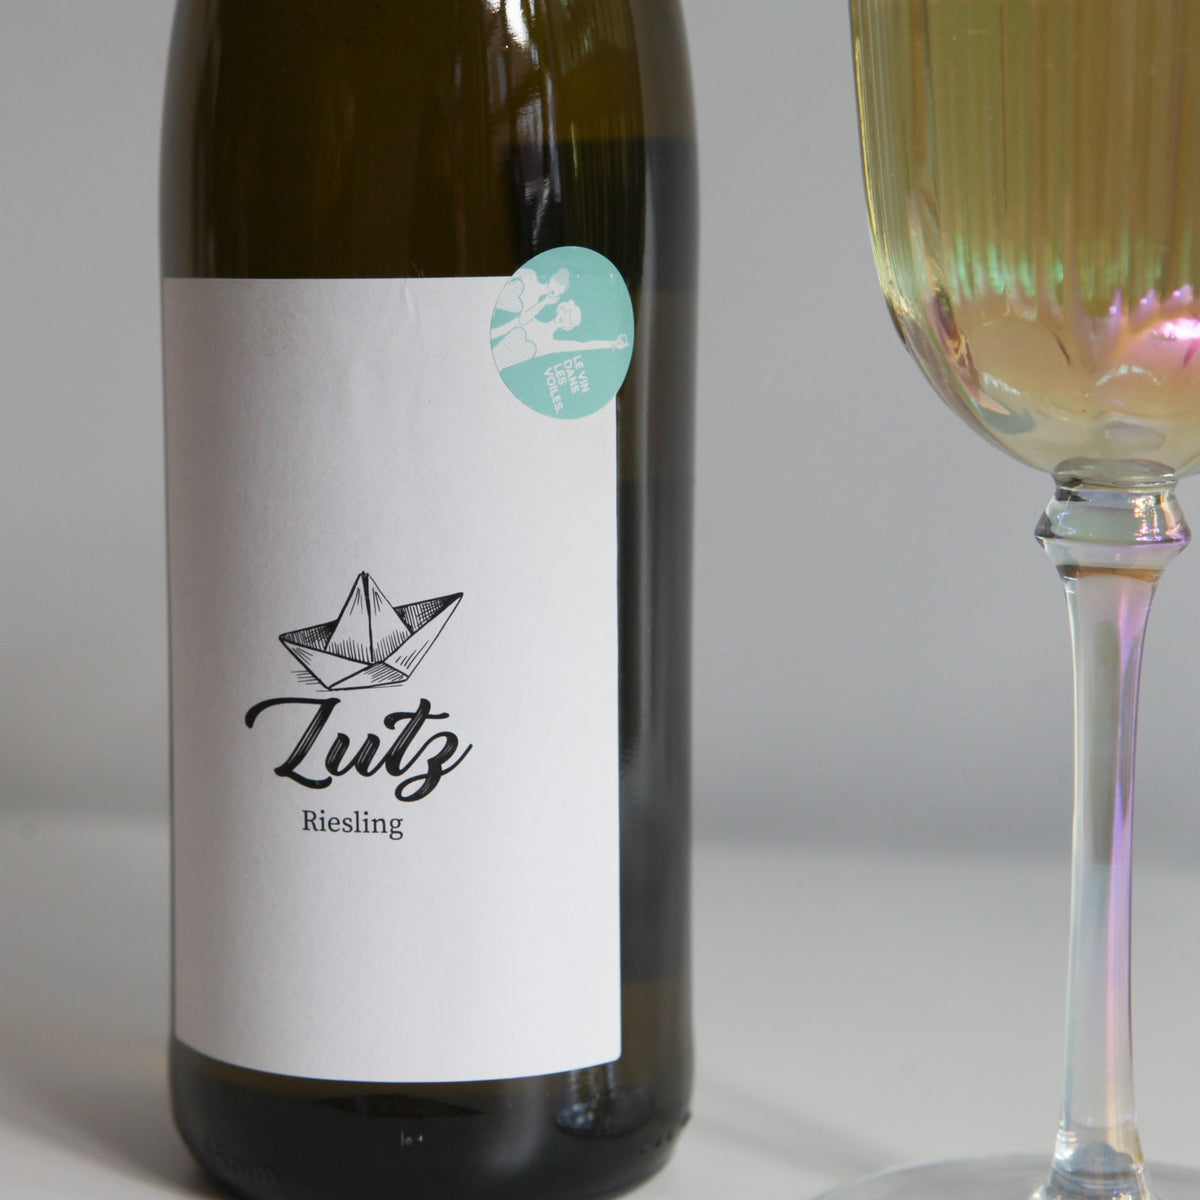 Bouteille de vin nature, vin blanc allemand pas Jan Phillip Bleeke en Moselle : Lutz riesling. (Image : 3 sur 3)